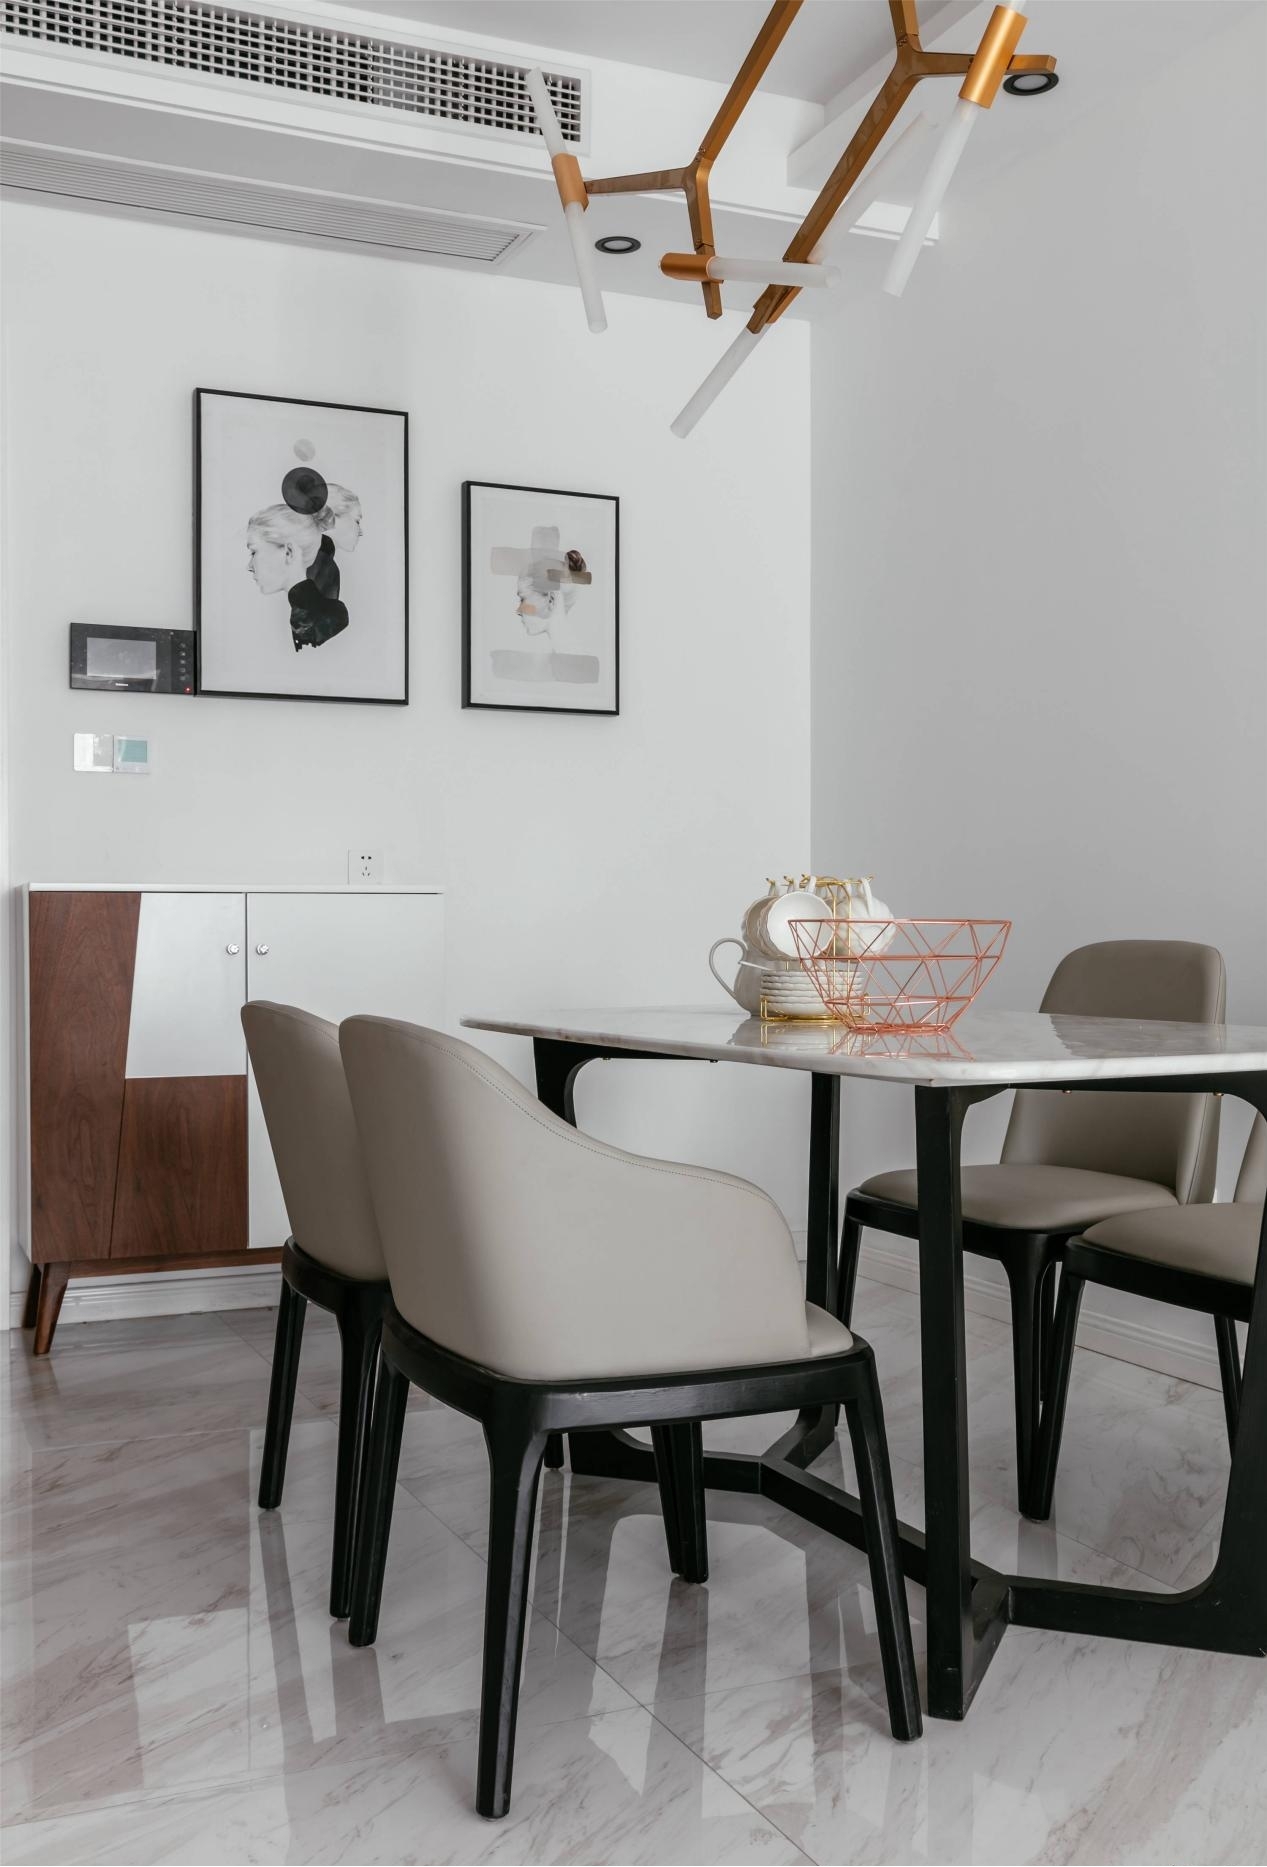 餐桌椅的材质与造型与客厅的相似，更加凸显整体风格。金属吊灯造型夸张张扬，使空旷的空间不显清冷。